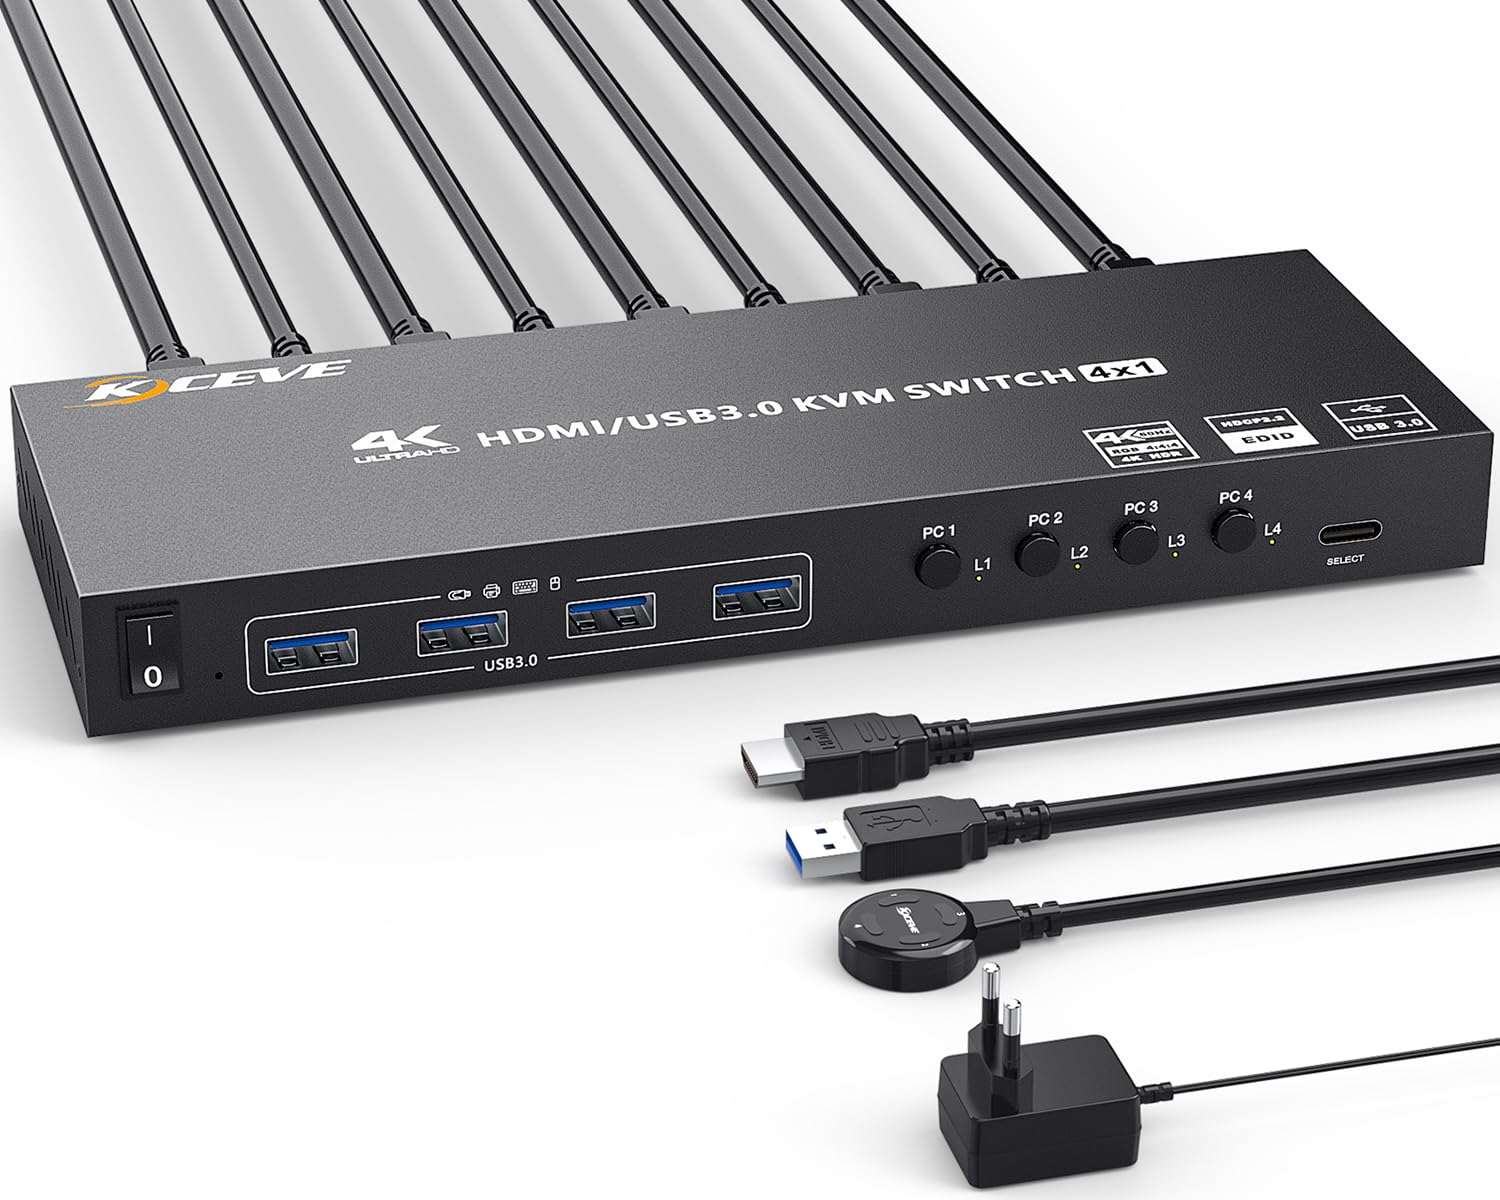 USB 3.0 KVM Switch 4 PC 1 Monitor 4K@60Hz, KVM Switch HDMI Support HDMI2.0,HDCP2.2,EDID Emulator, mit 4 USB 3.0 Ports für 4 PC Teilen 1 Monitor und USB Geräte, mit Desktop-Controller und USB-Kabeln